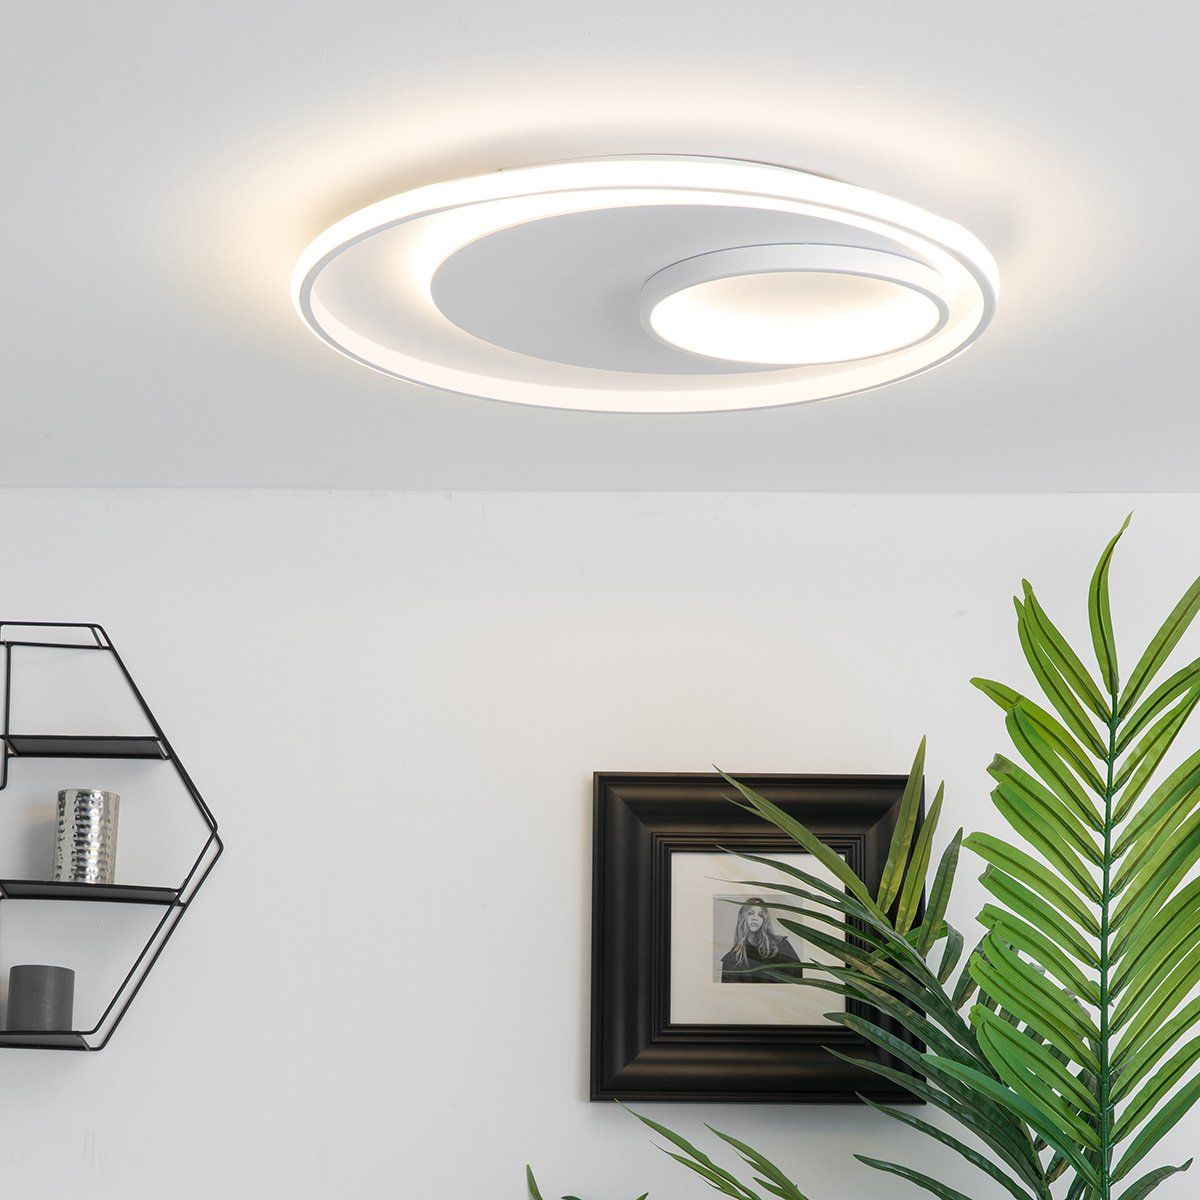 La CROIX-plafonnier LED Design Moderne